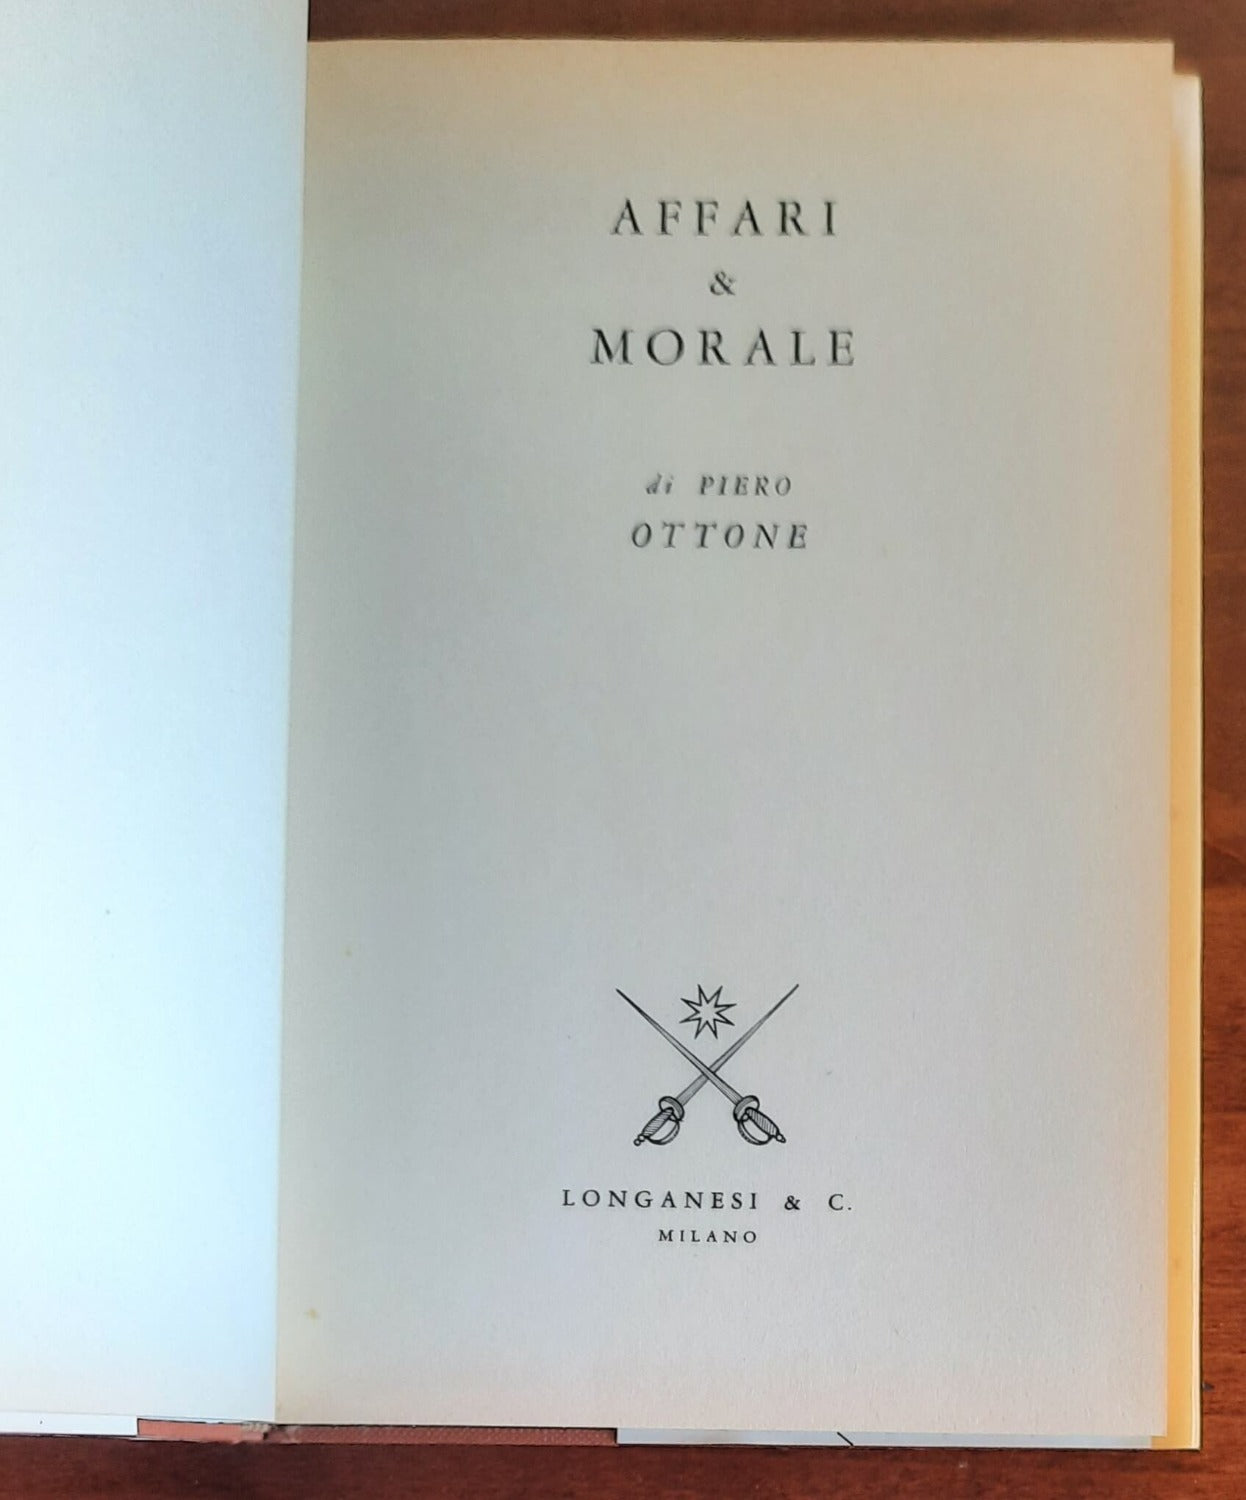 Affari & morale - Longanesi & C.